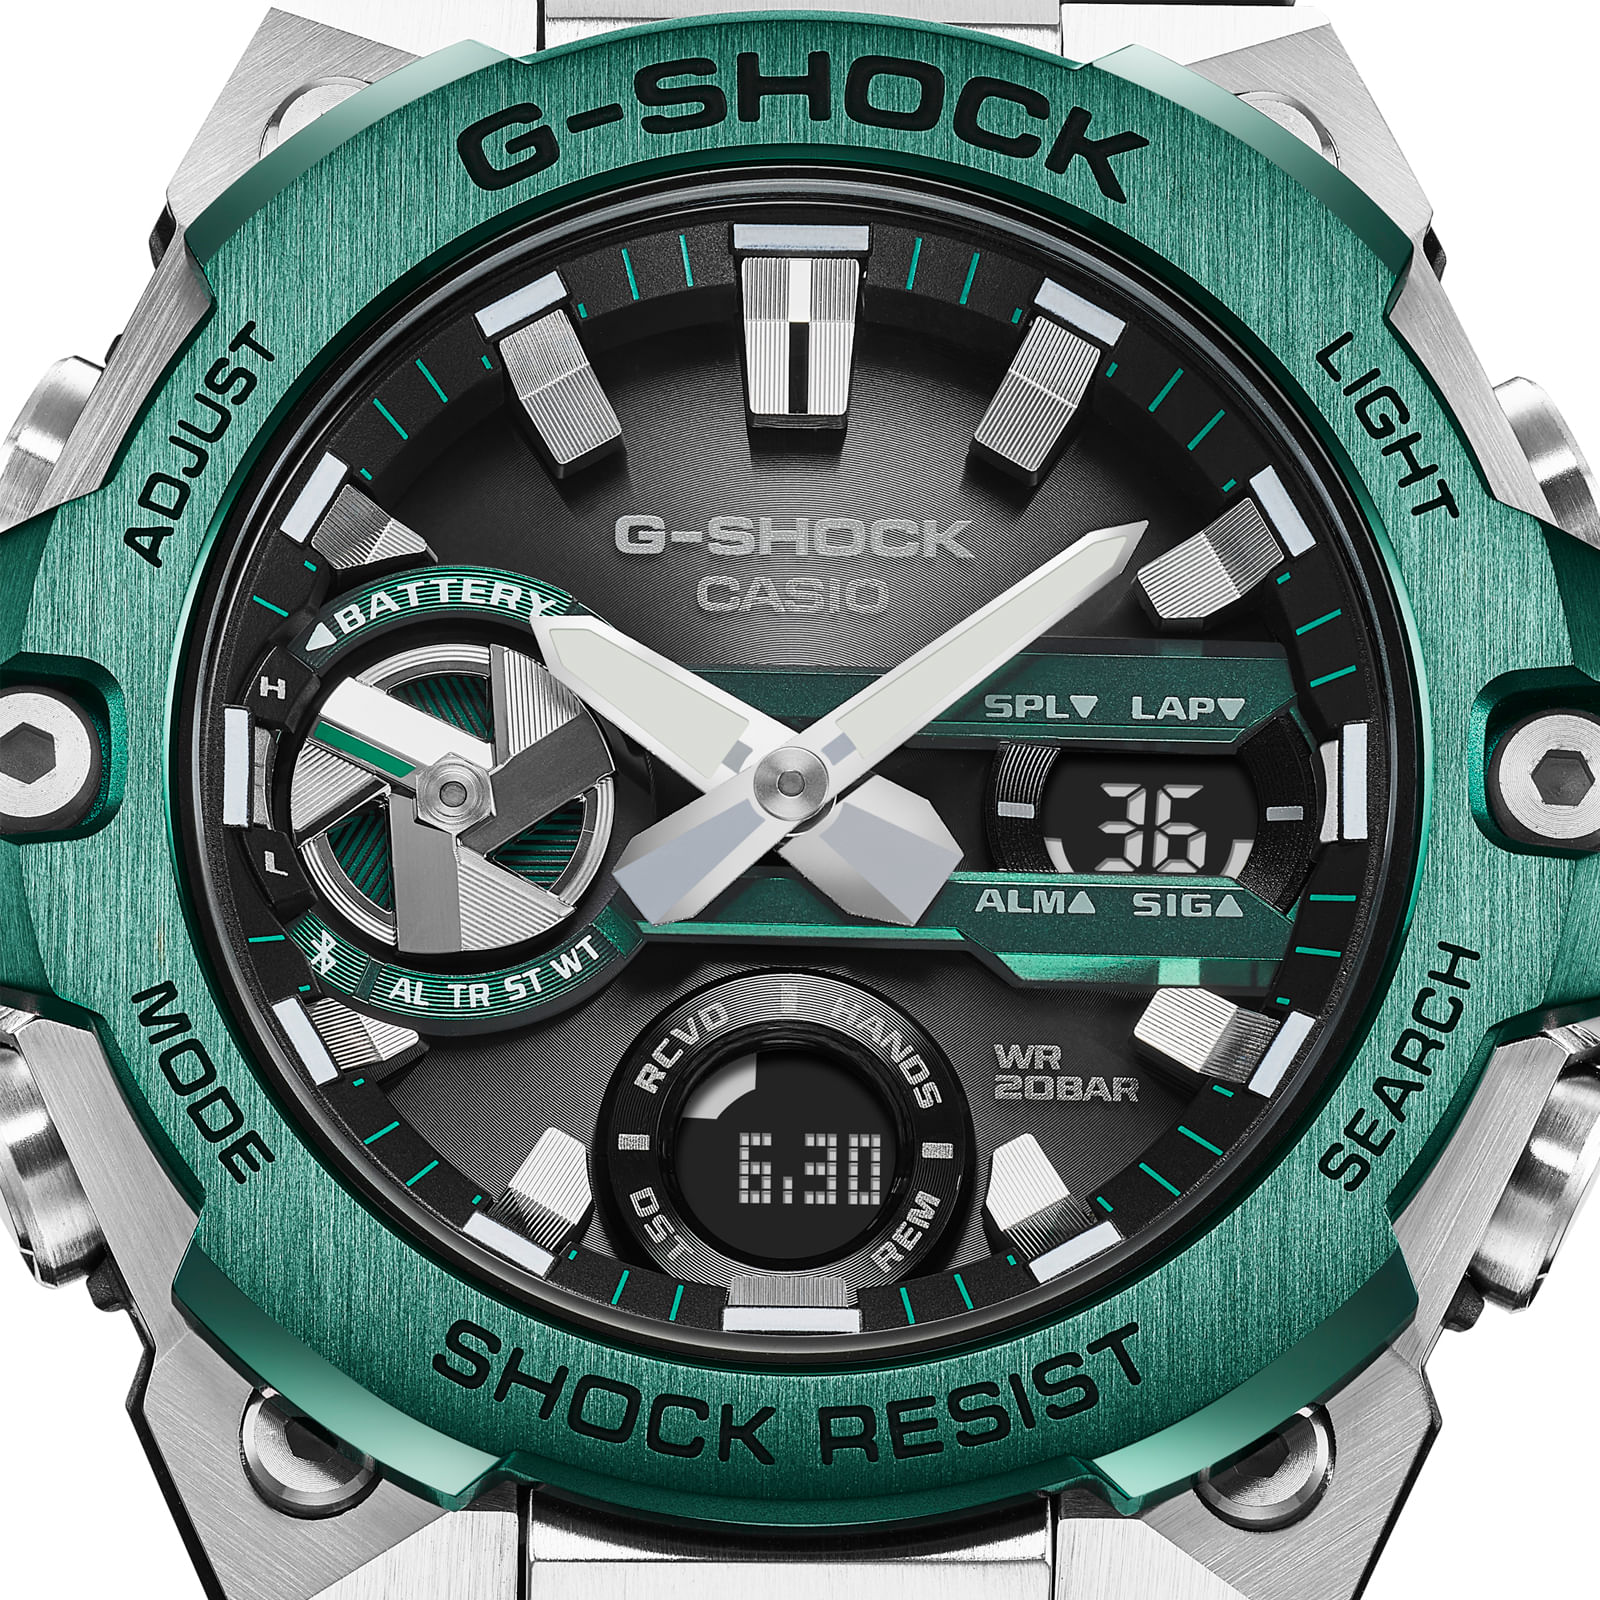 Reloj G-SHOCK GST-B400CD-1A3 Resina/Acero Hombre Plateado